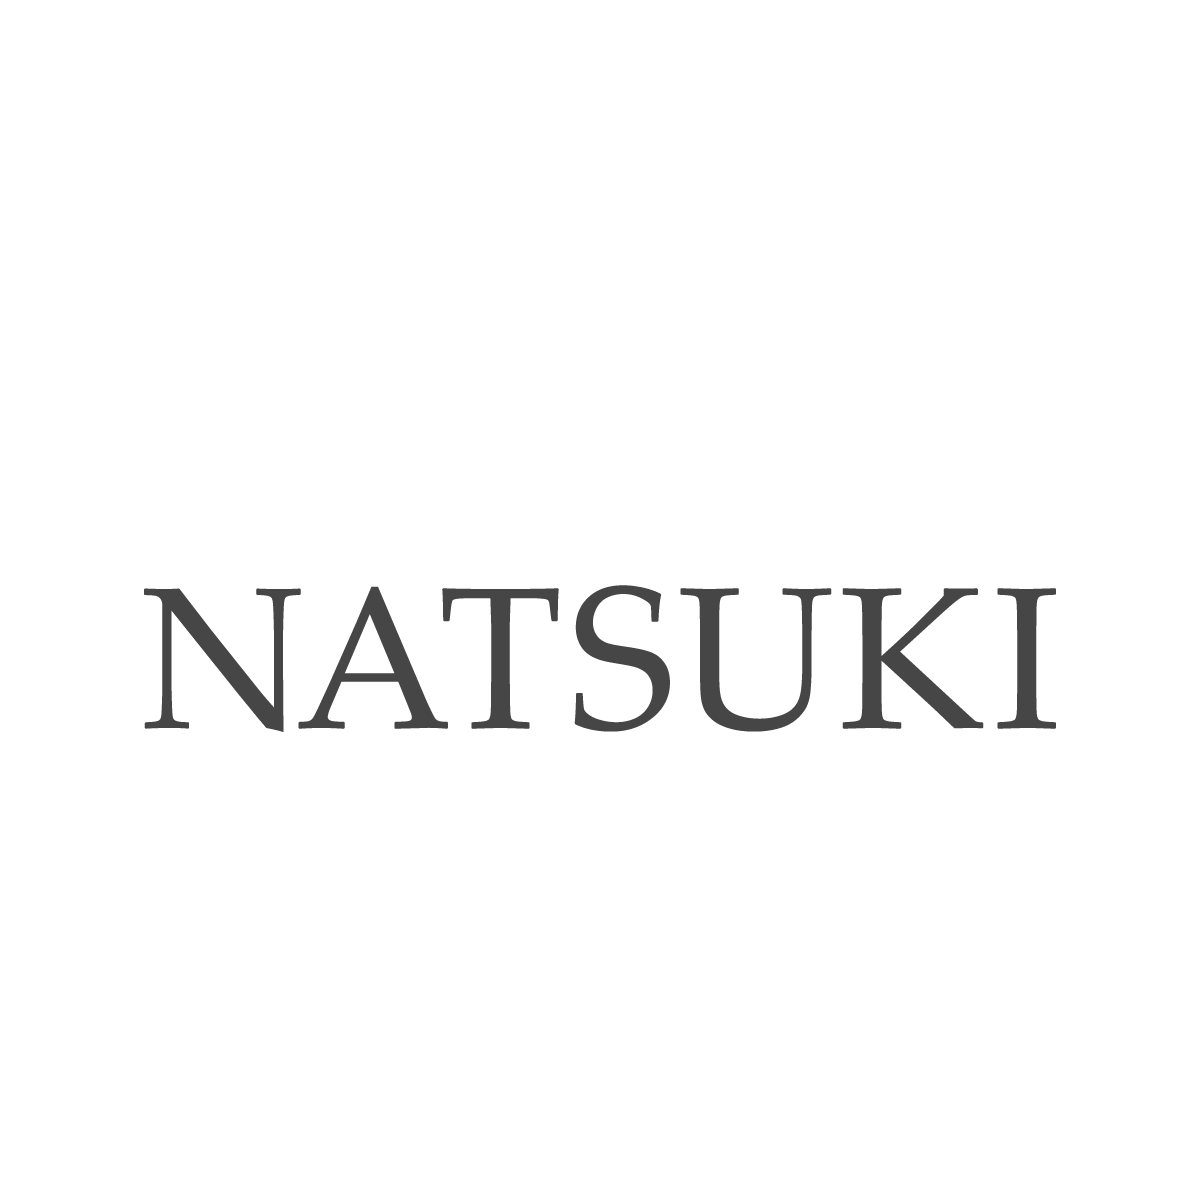 natsuki